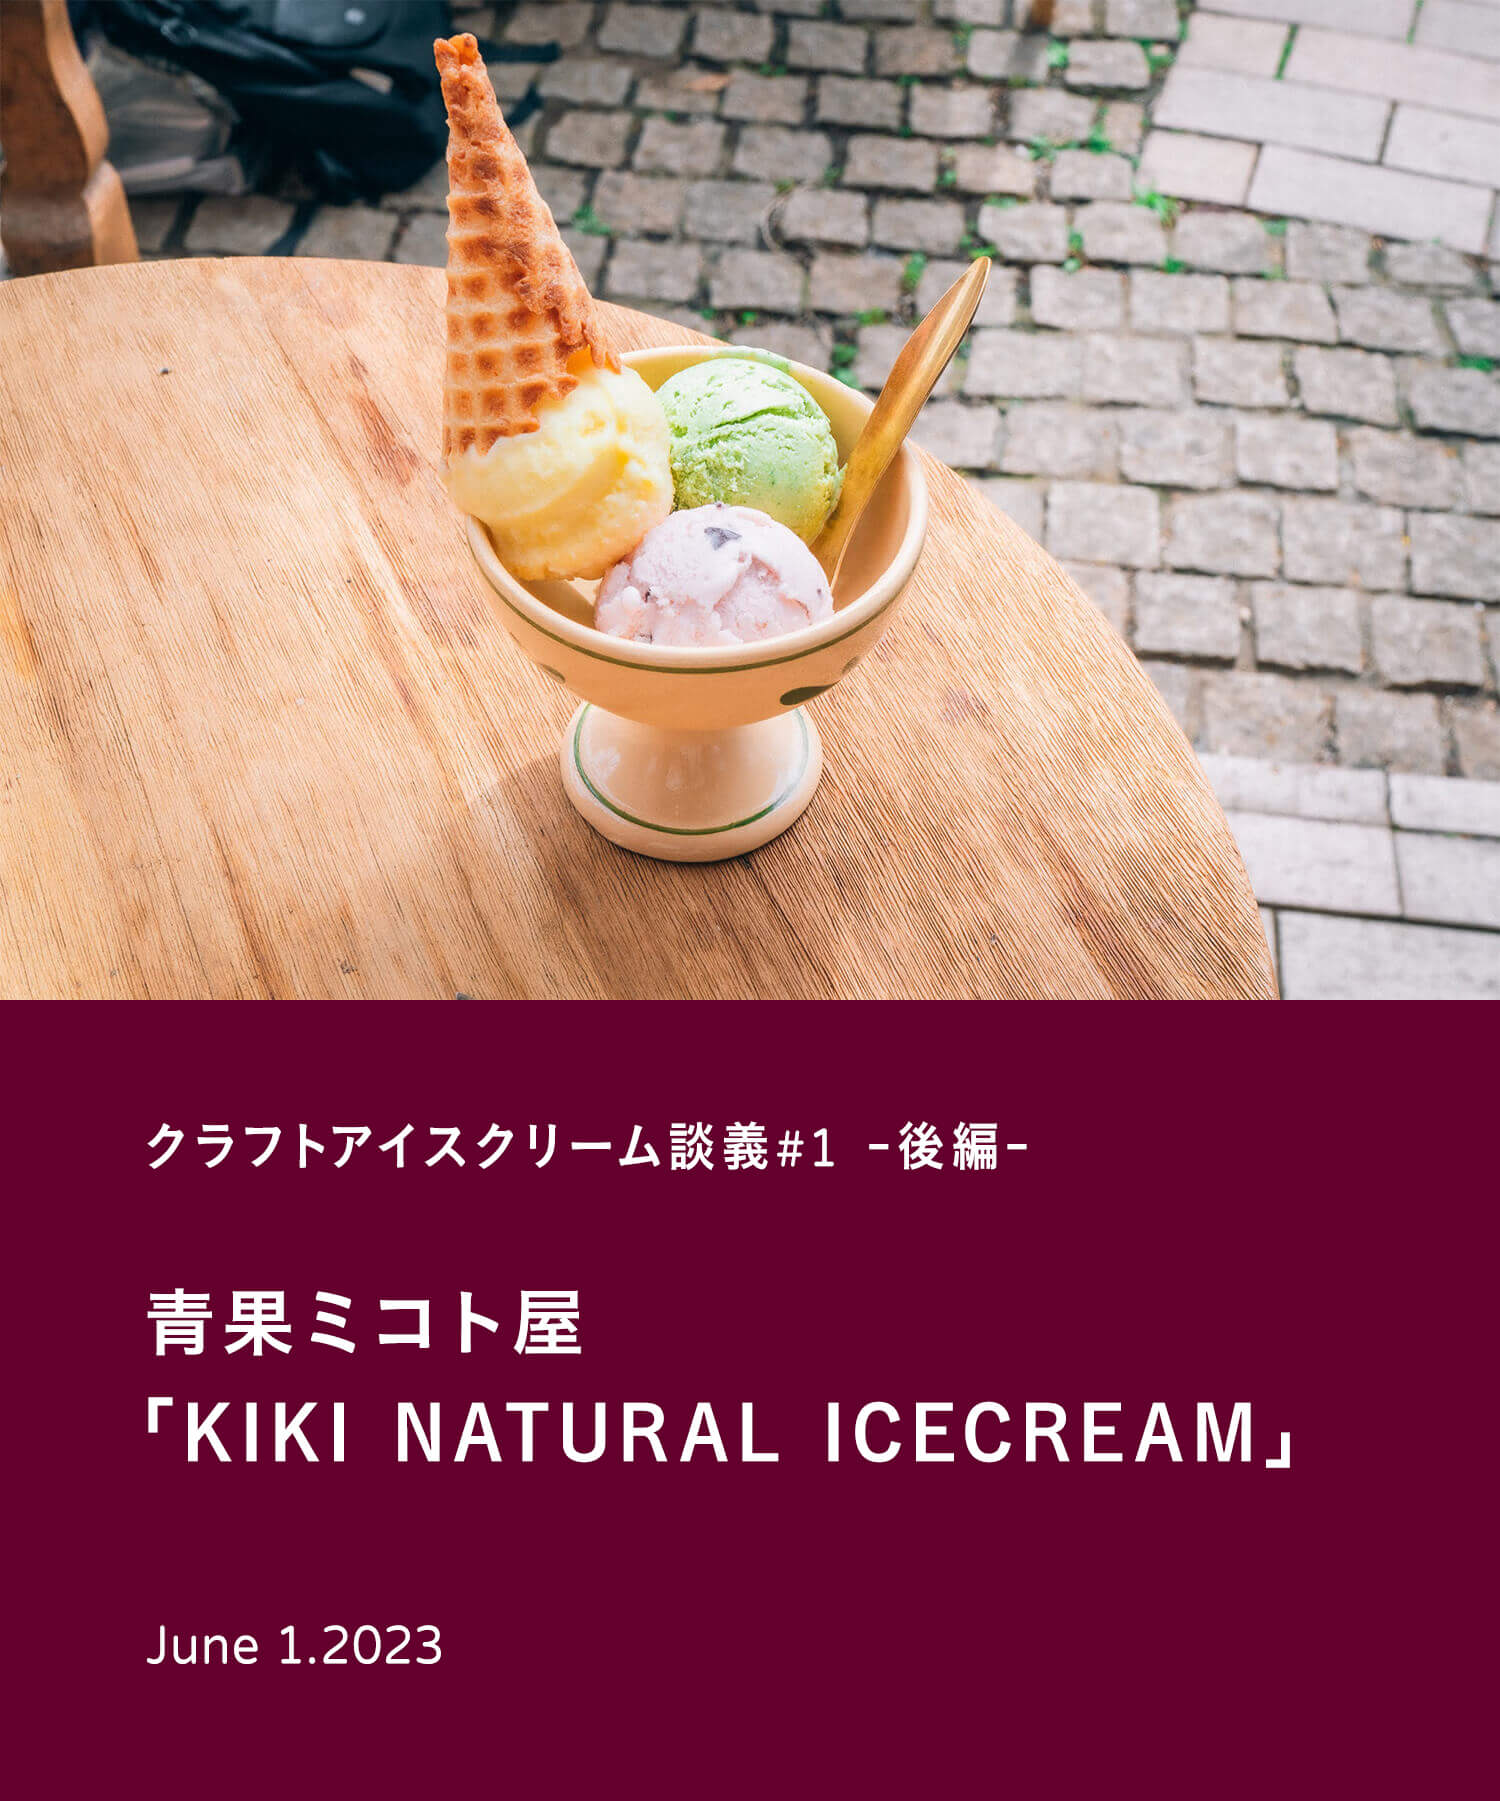 クラフトアイスクリーム談義#1- 後編 -　青果ミコト屋「KIKI NATURAL ICECREAM」